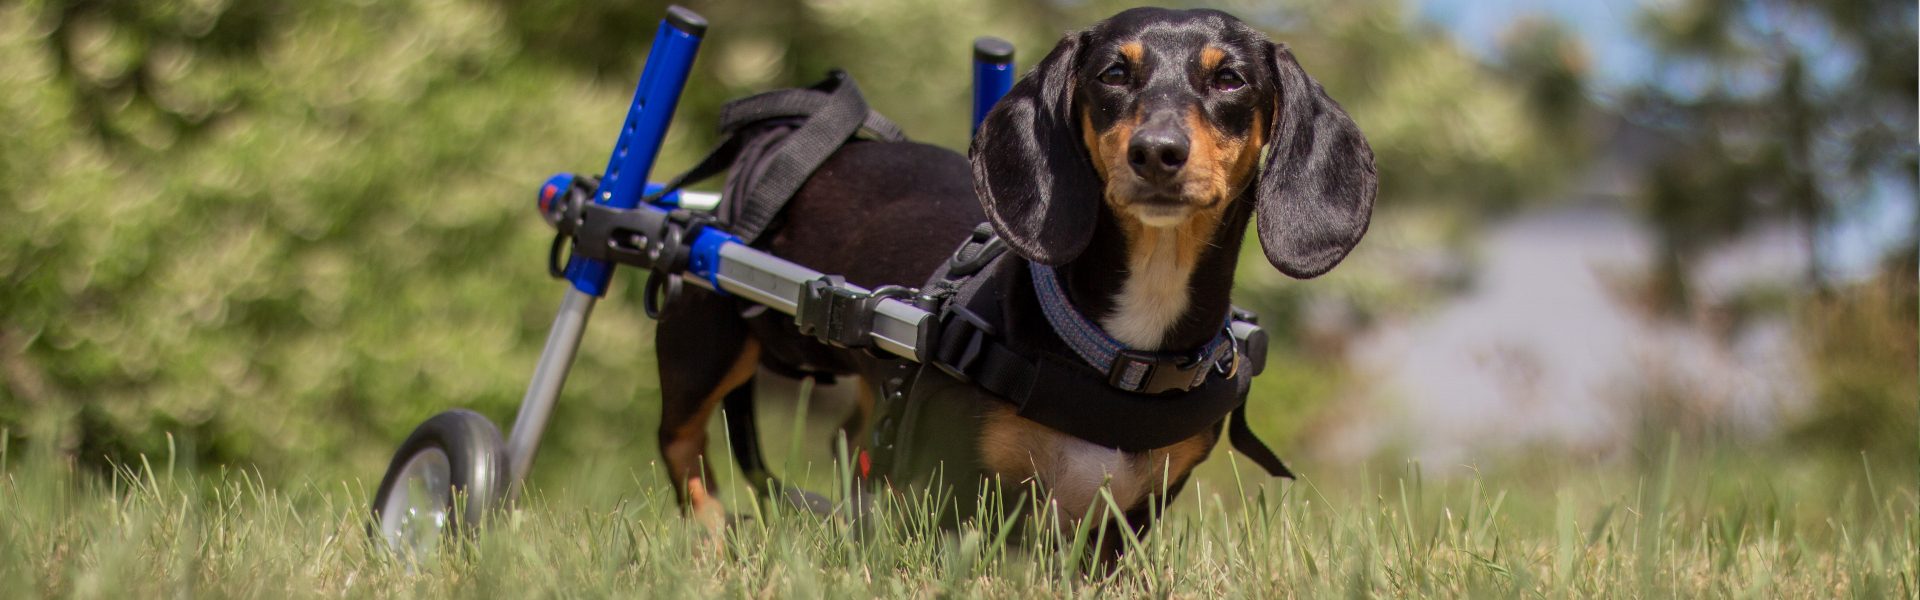 dog in wheelchair